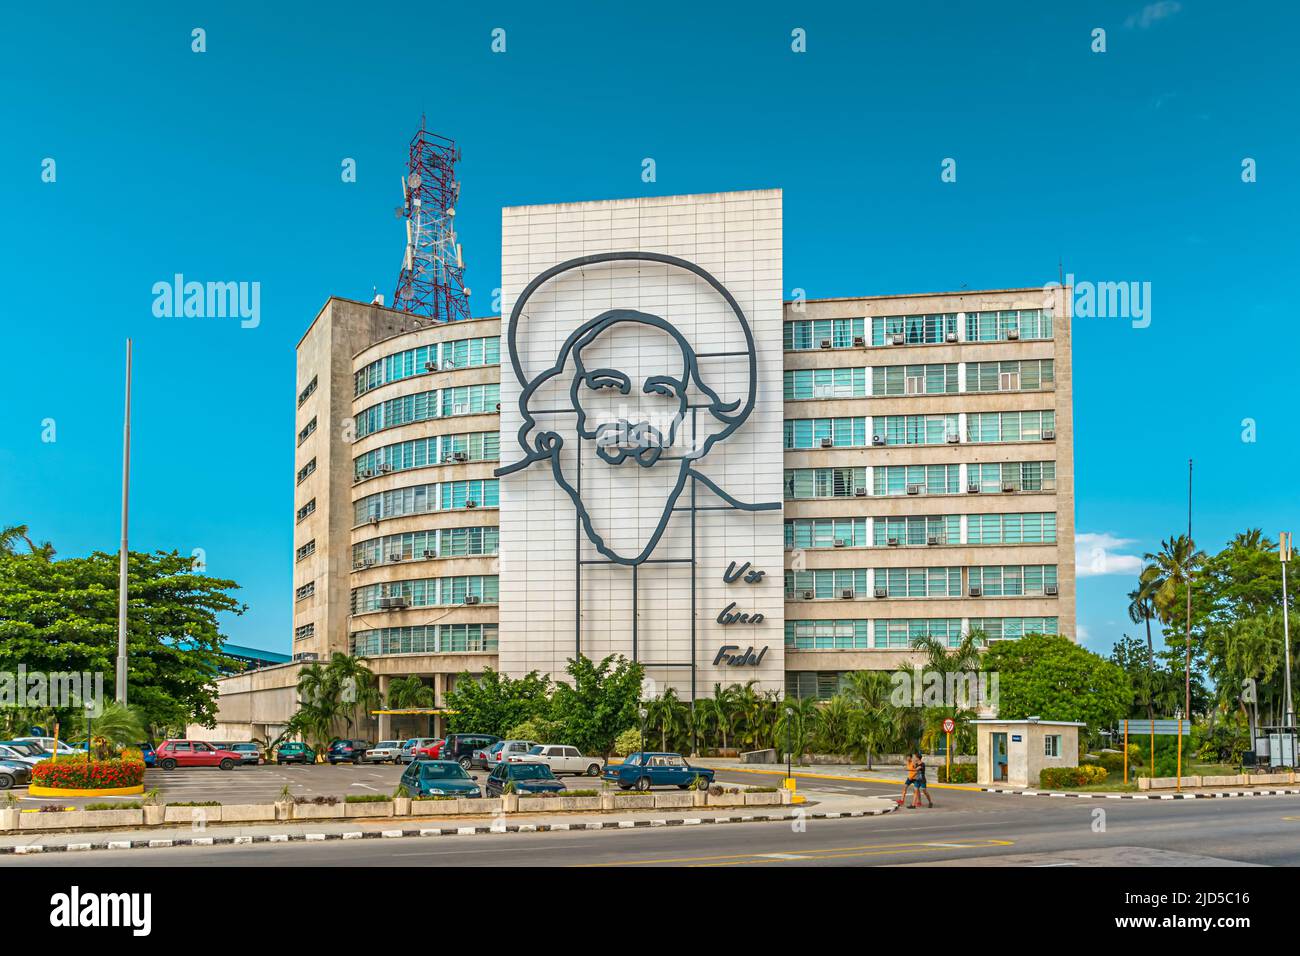 El Ministerio de Comunicaciones with the huge Camilo Cienfuegos wall art at the Plaza de la Revolucion in Havana, Cuba Stock Photo